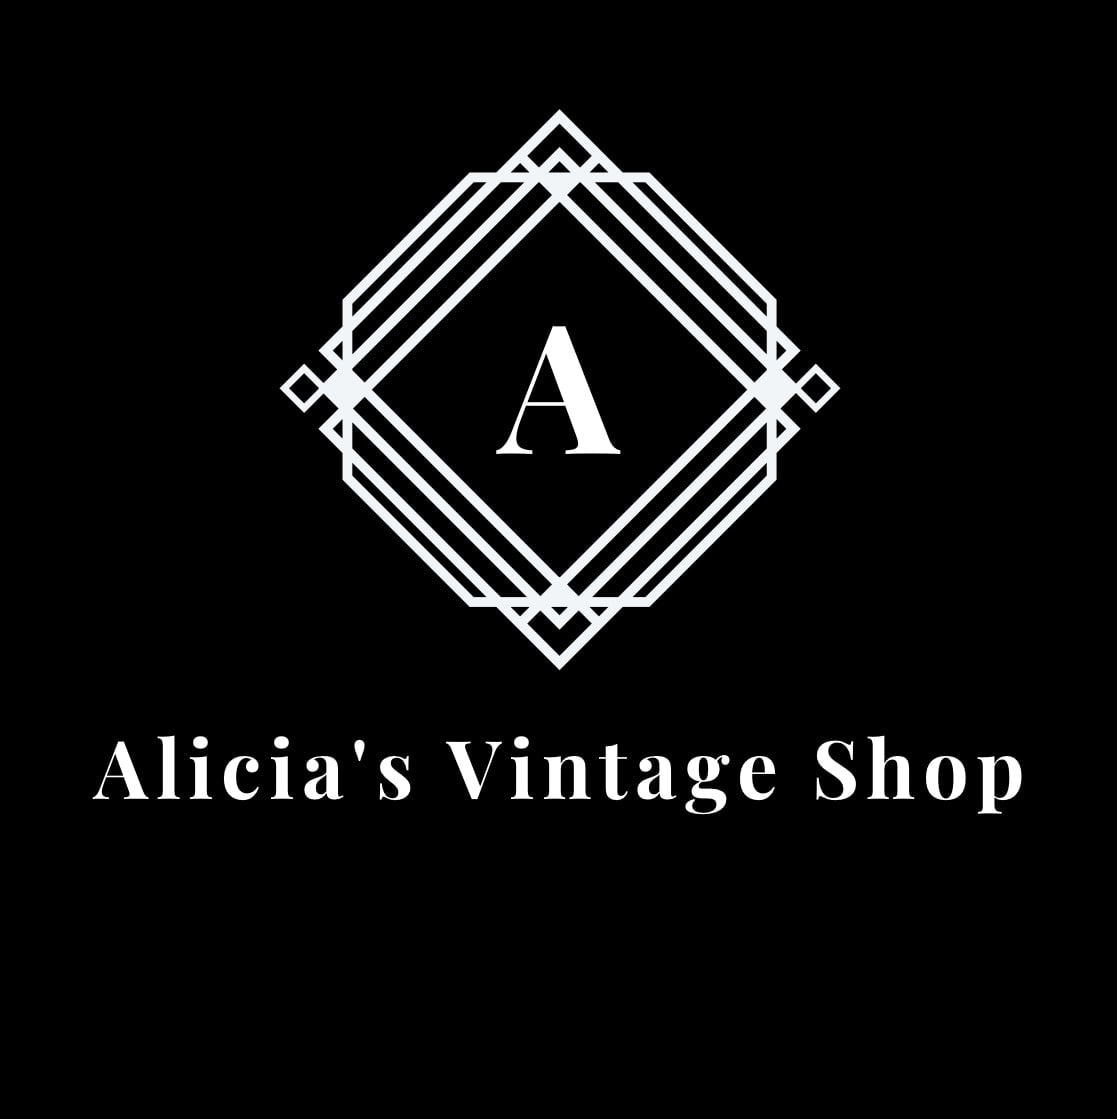 Alicia's Vintage Shop LLC